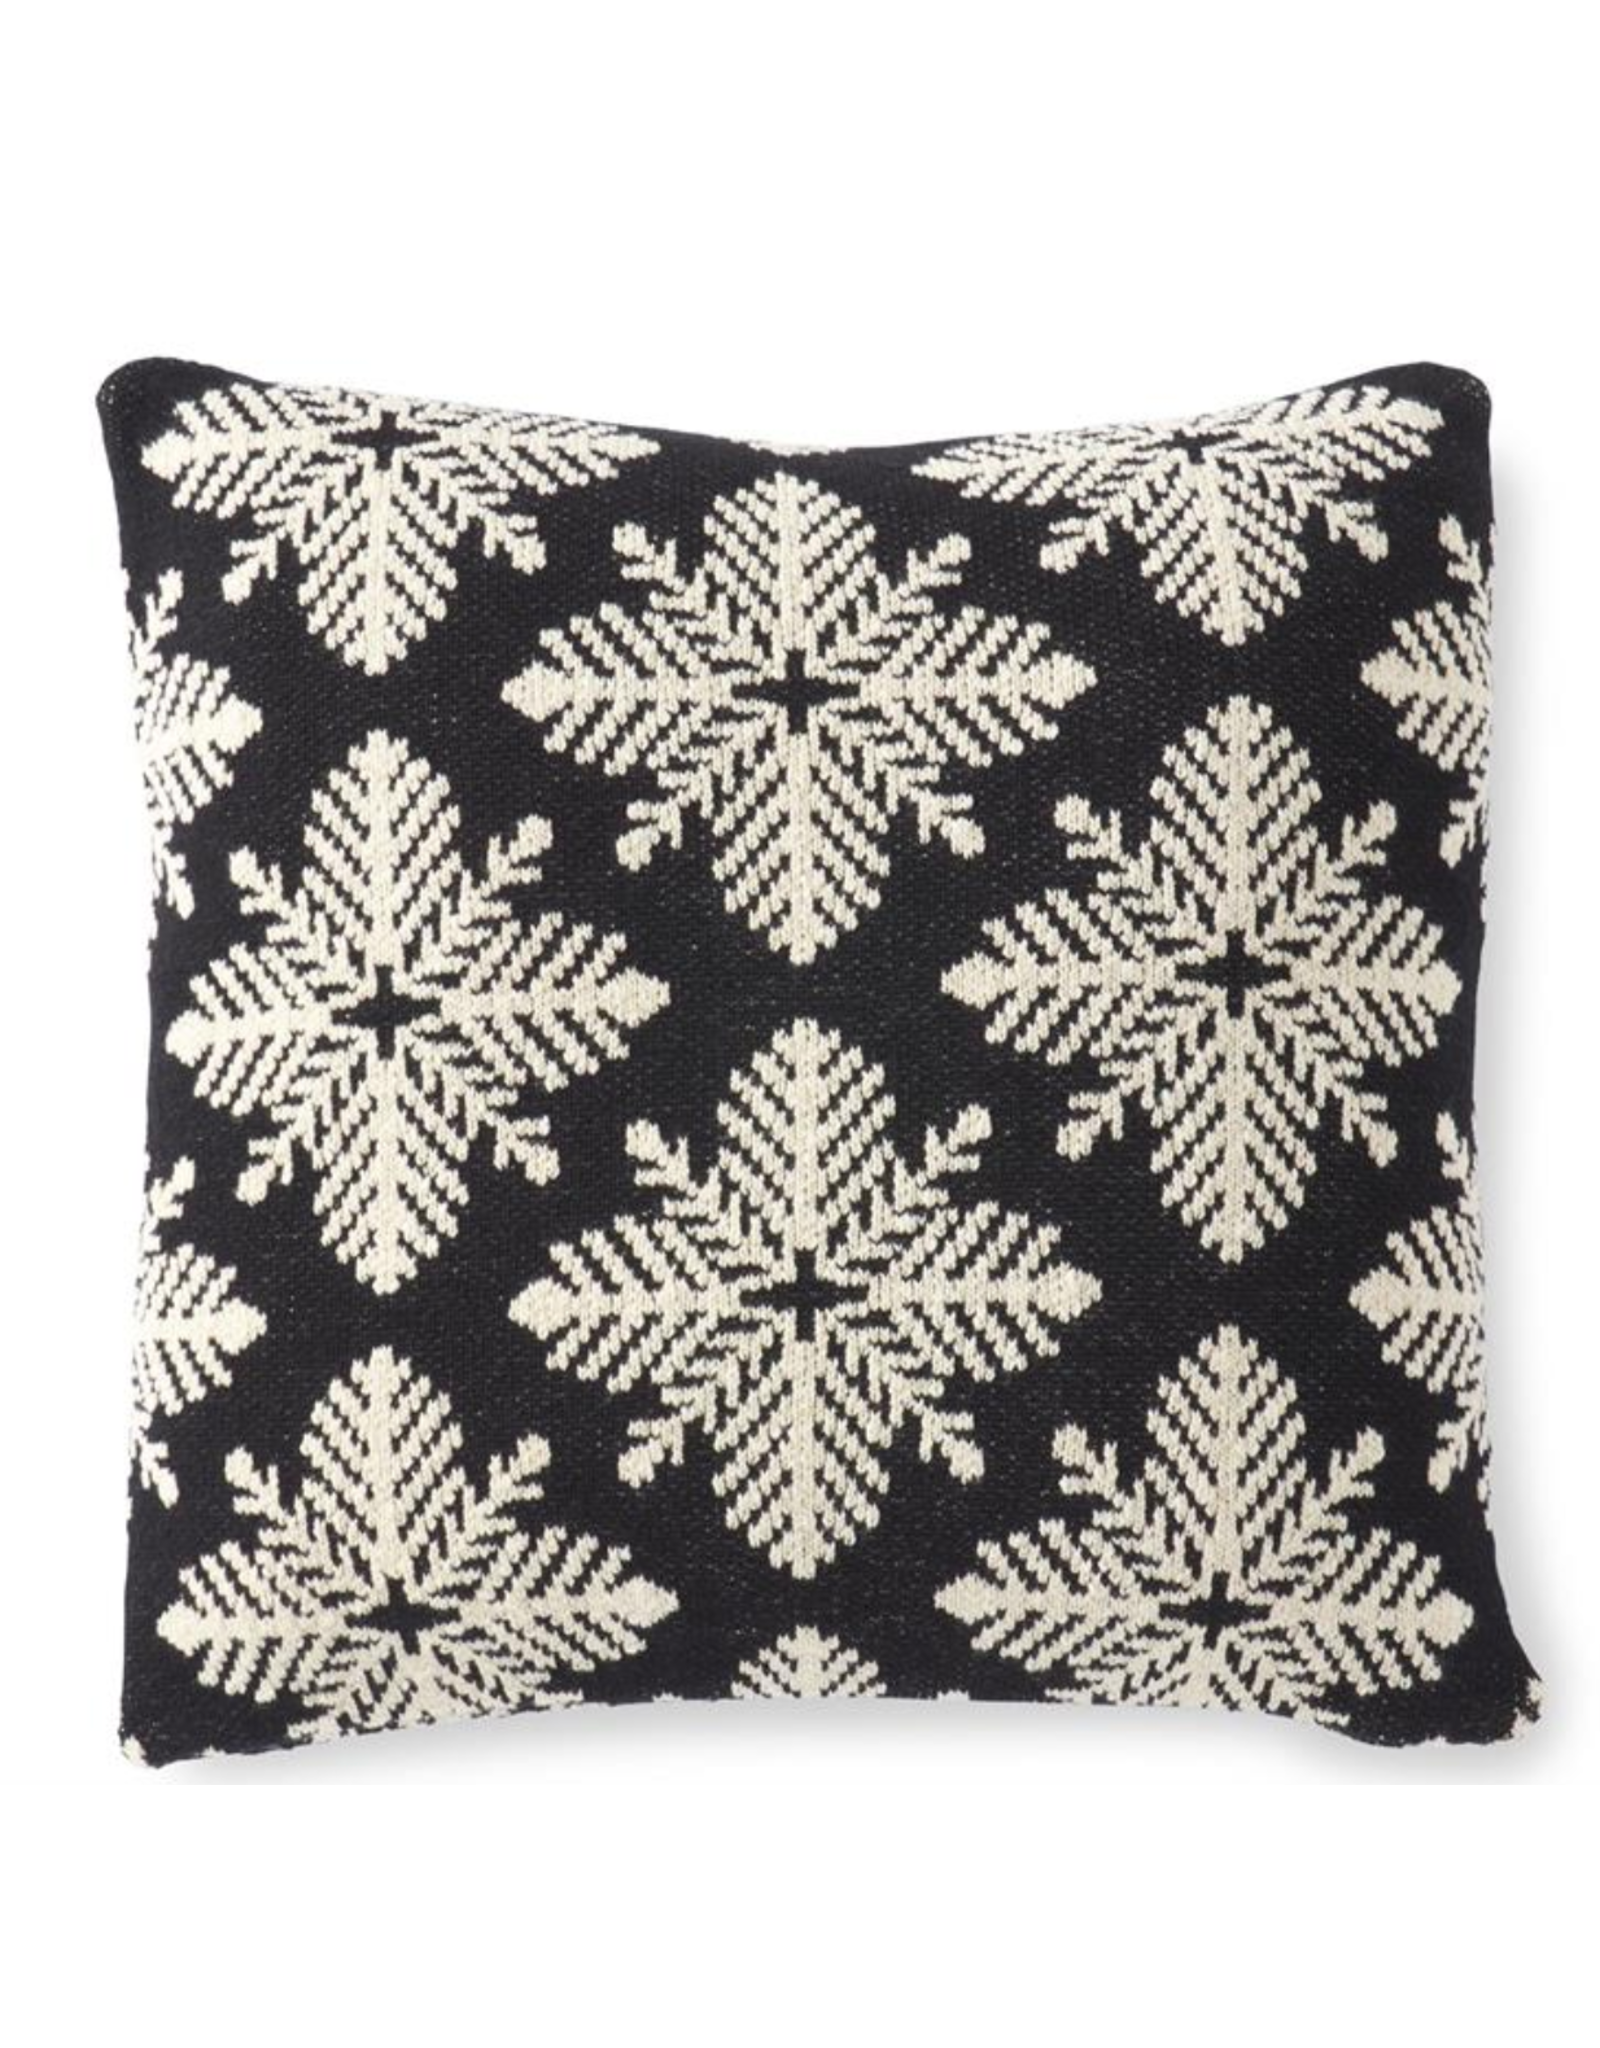 K & K 20" Square Black & White Knit Snowflake Pillow